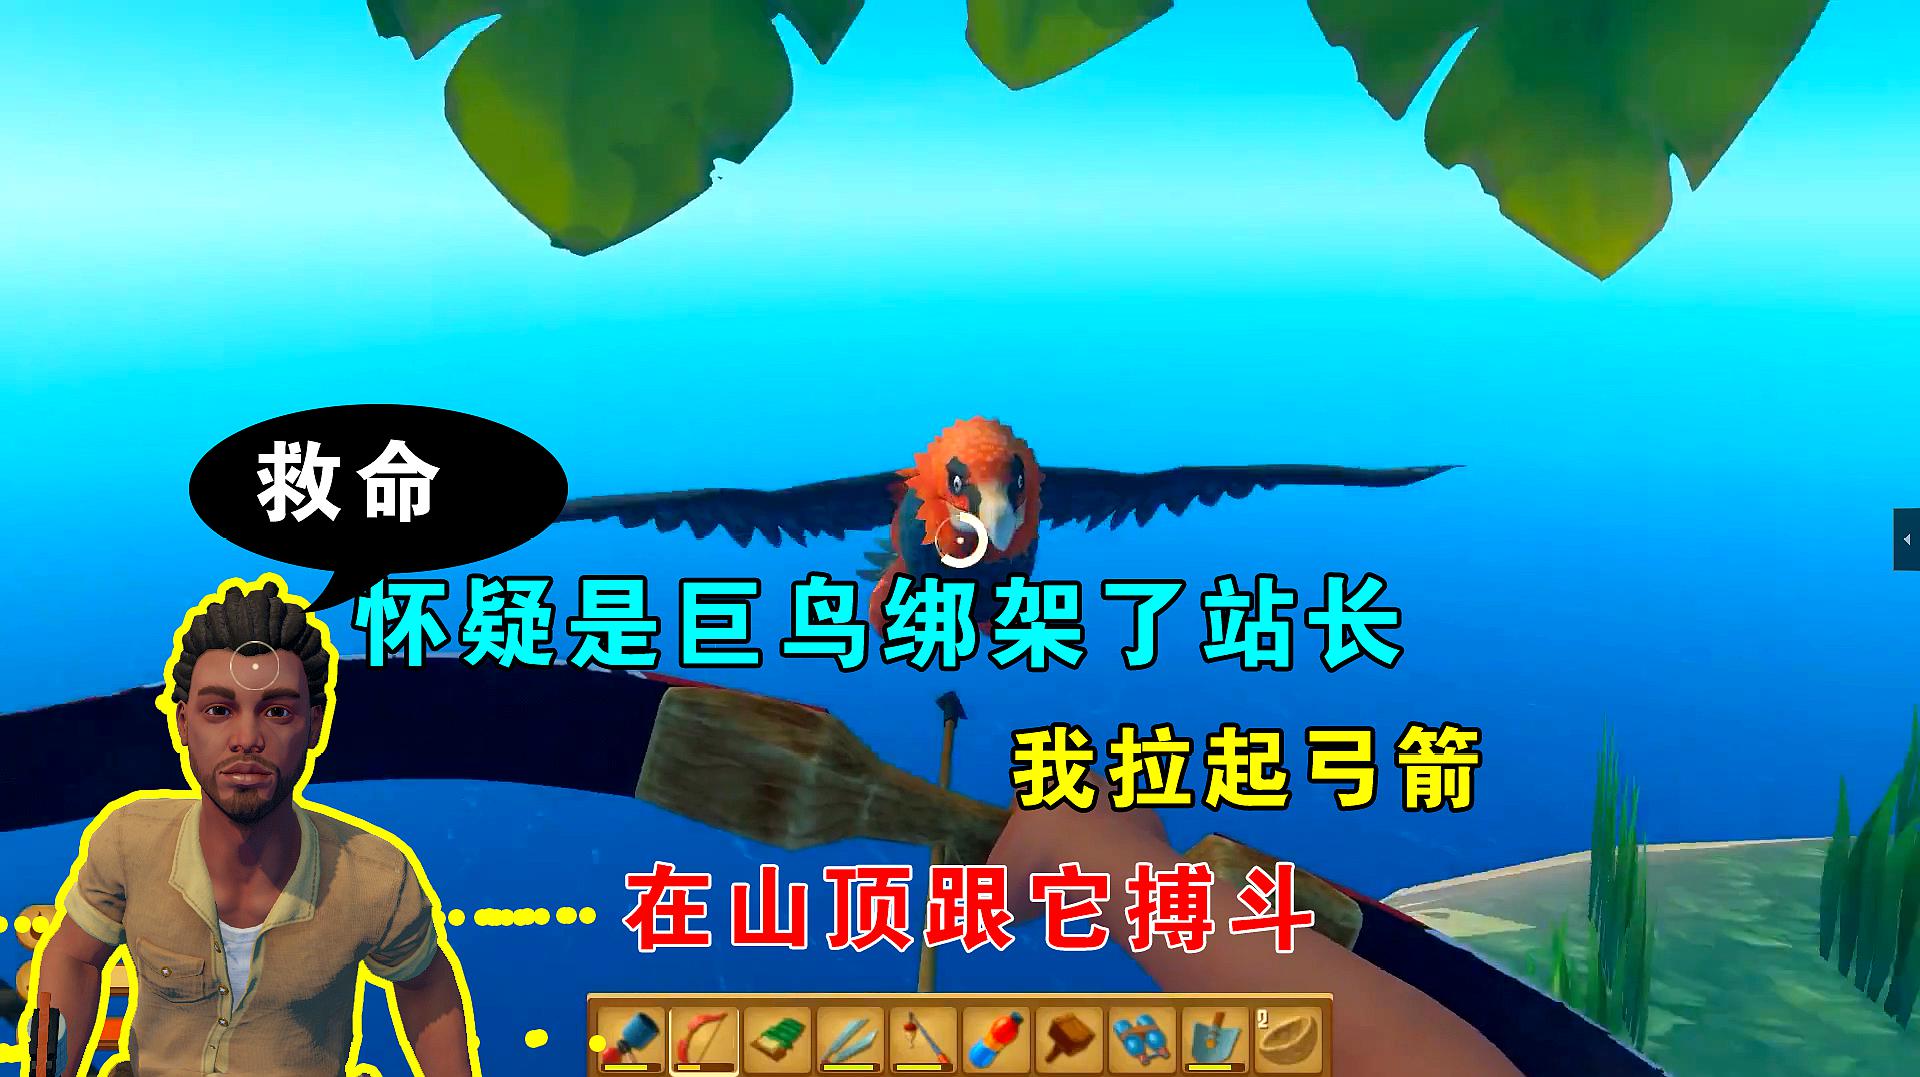 小辉哥游戏解说:沙盒类游戏《木筏求生》的精彩合集